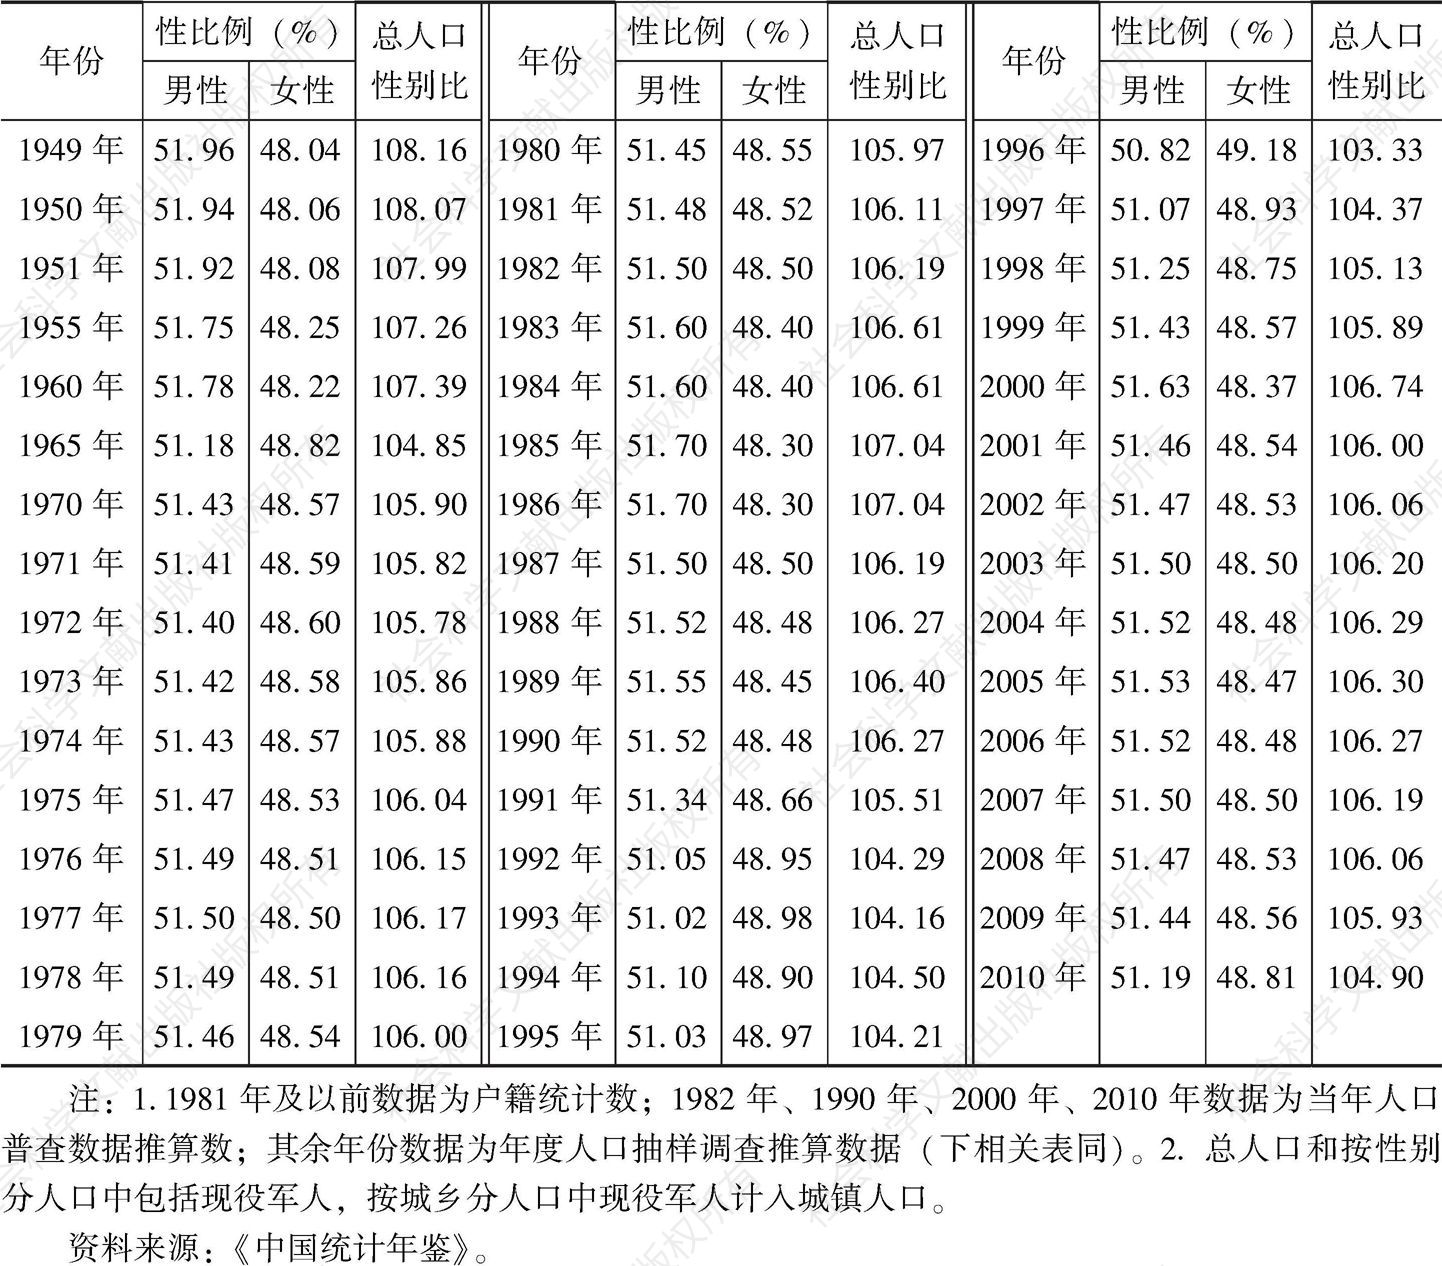 表3-1 中国部分年人口性别构成指标